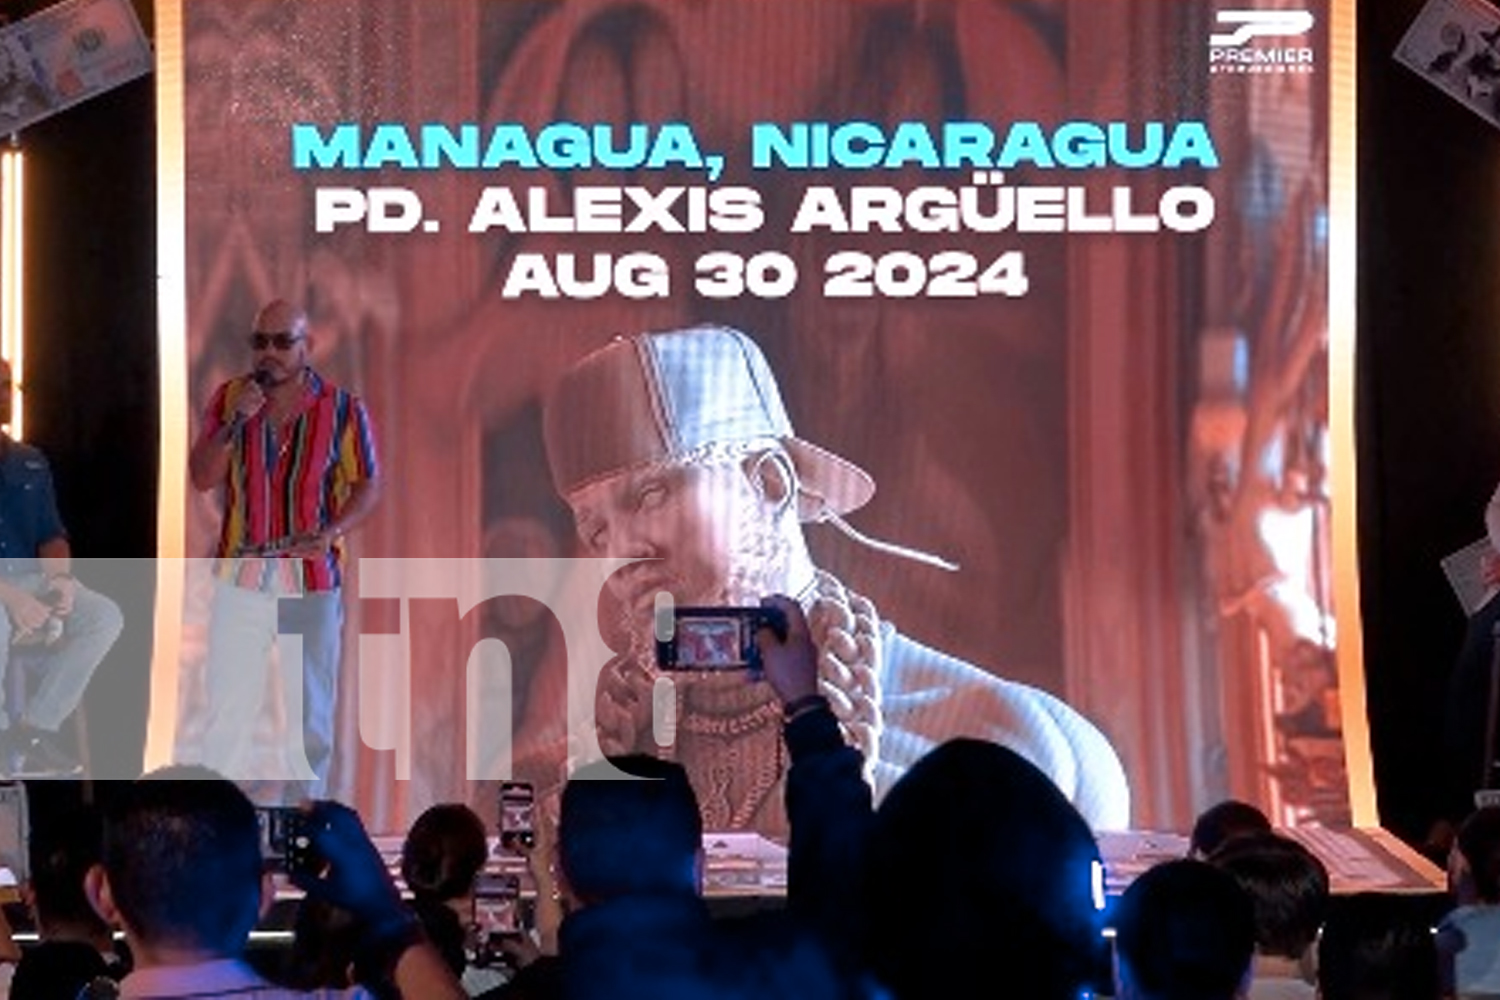 Foto: ¡El Alfa Llega a Managua! Ron Flor de Caña y Claro Nicaragua te invitan a su concierto / TN8